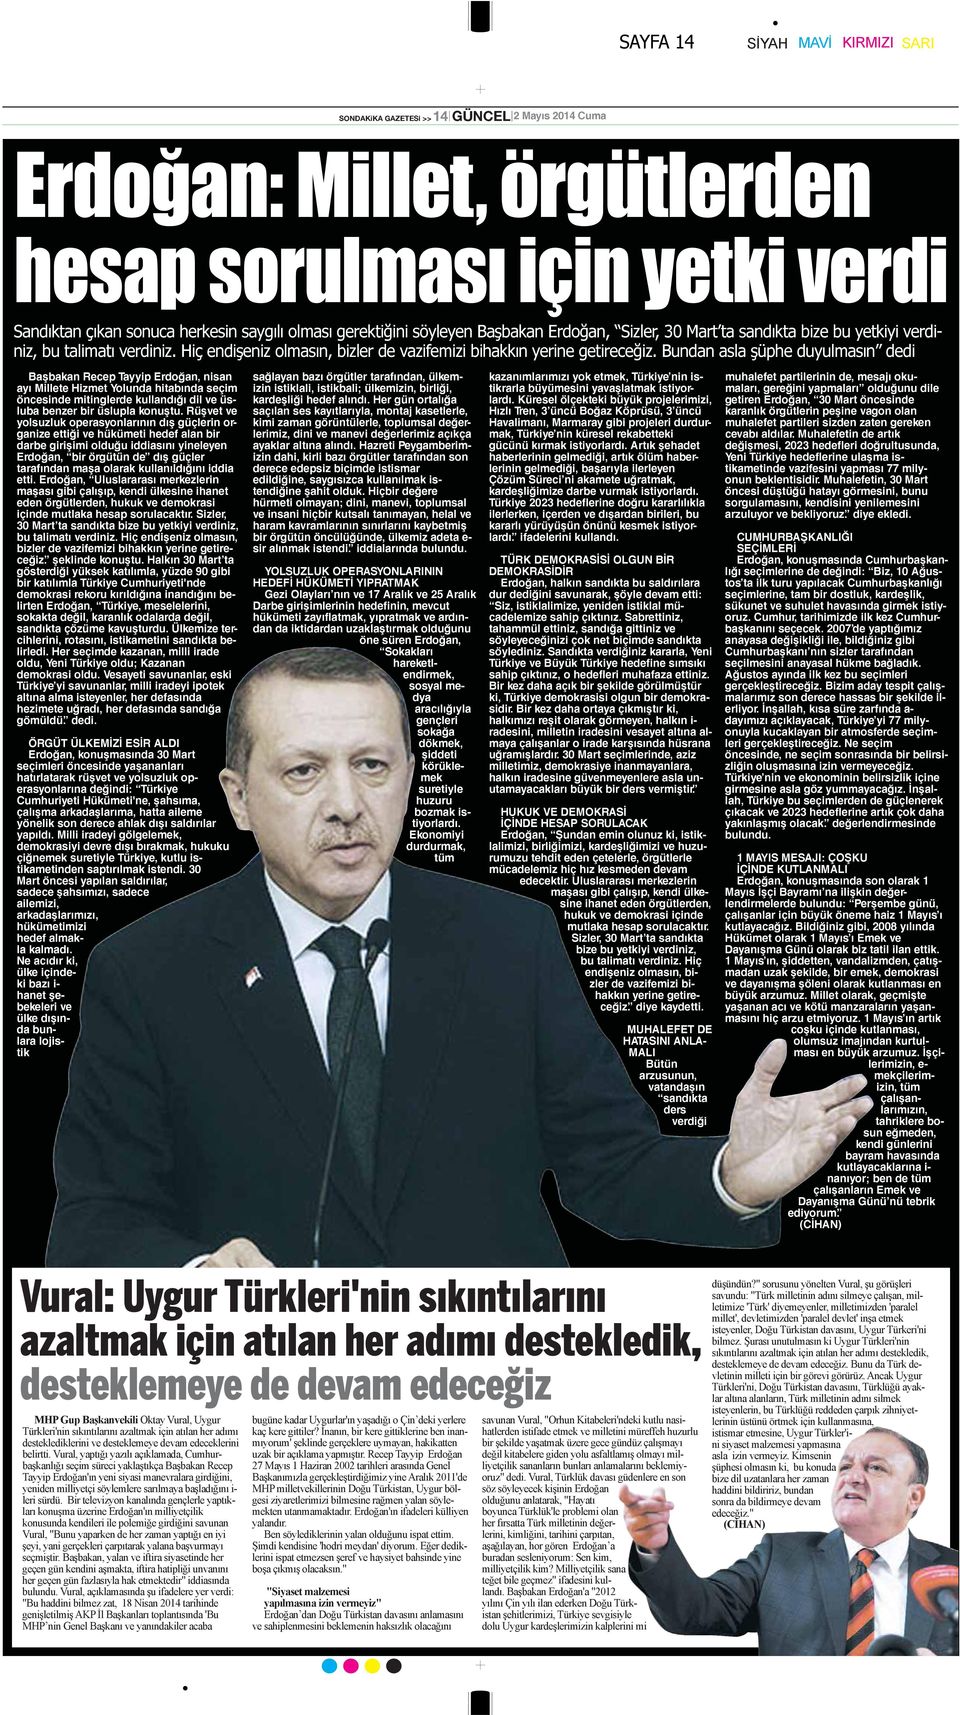 Bundan asla şüphe duyulmasın dedi Başbakan Recep Tayyip Erdoğan, nisan ayı Millete Hizmet Yolunda hitabında seçim öncesinde mitinglerde kullandığı dil ve üsluba benzer bir üslupla konuştu.